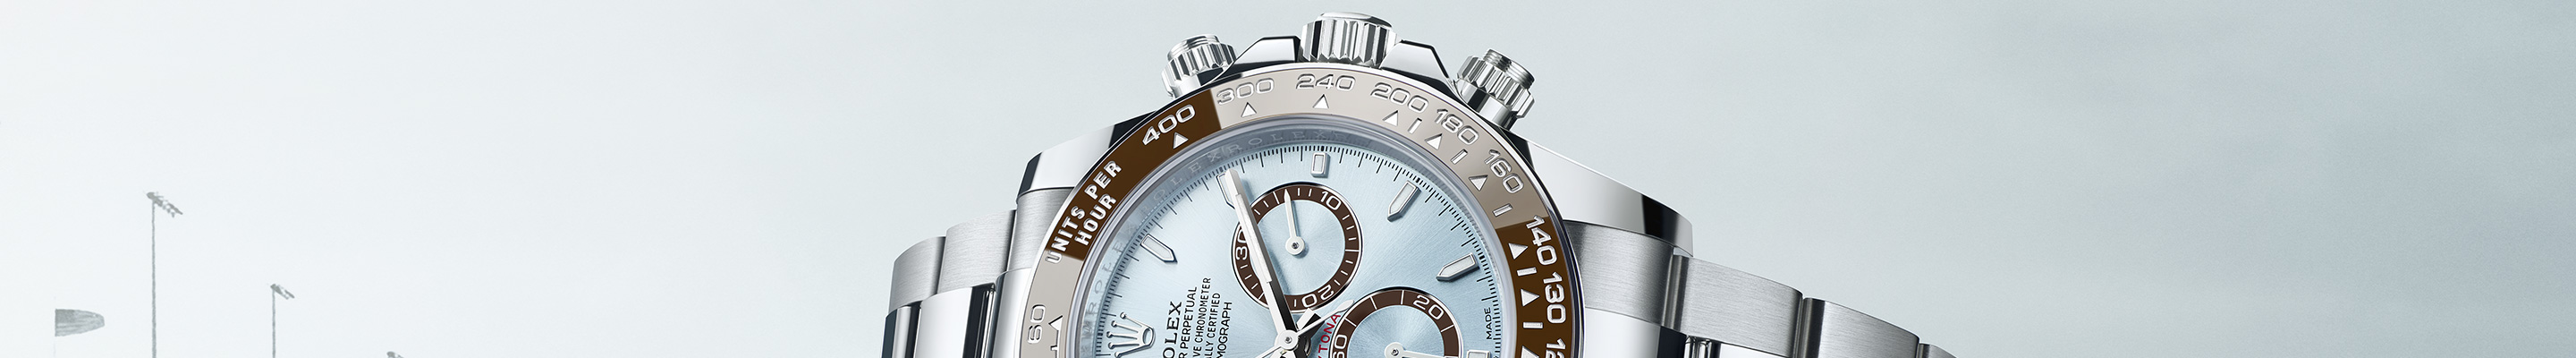 Rolex Cosmograph-Daytona nuevos relojes en EMWA en México